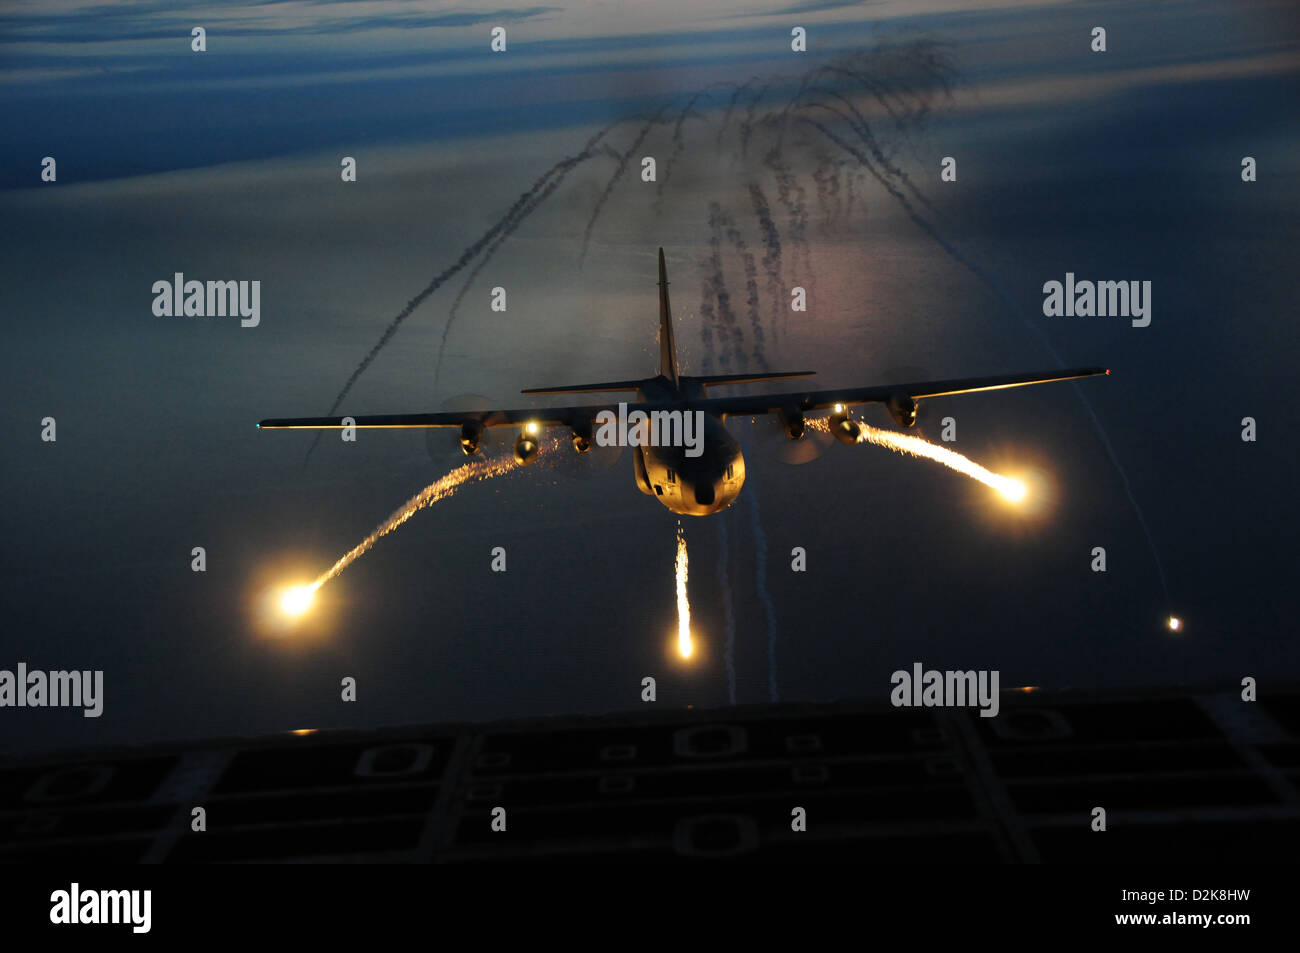 Eine c-130 Nacht Ausbildungsmission verwendet live Fackeln als eine Antenne Infrarot-Gegenmaßnahme zur Infrarot-Homing (Wärme sucht) Boden-Luft- oder Luft-Luft-Raketen besiegen 25. September 2012 um Niagara Falls, New York. Stockfoto